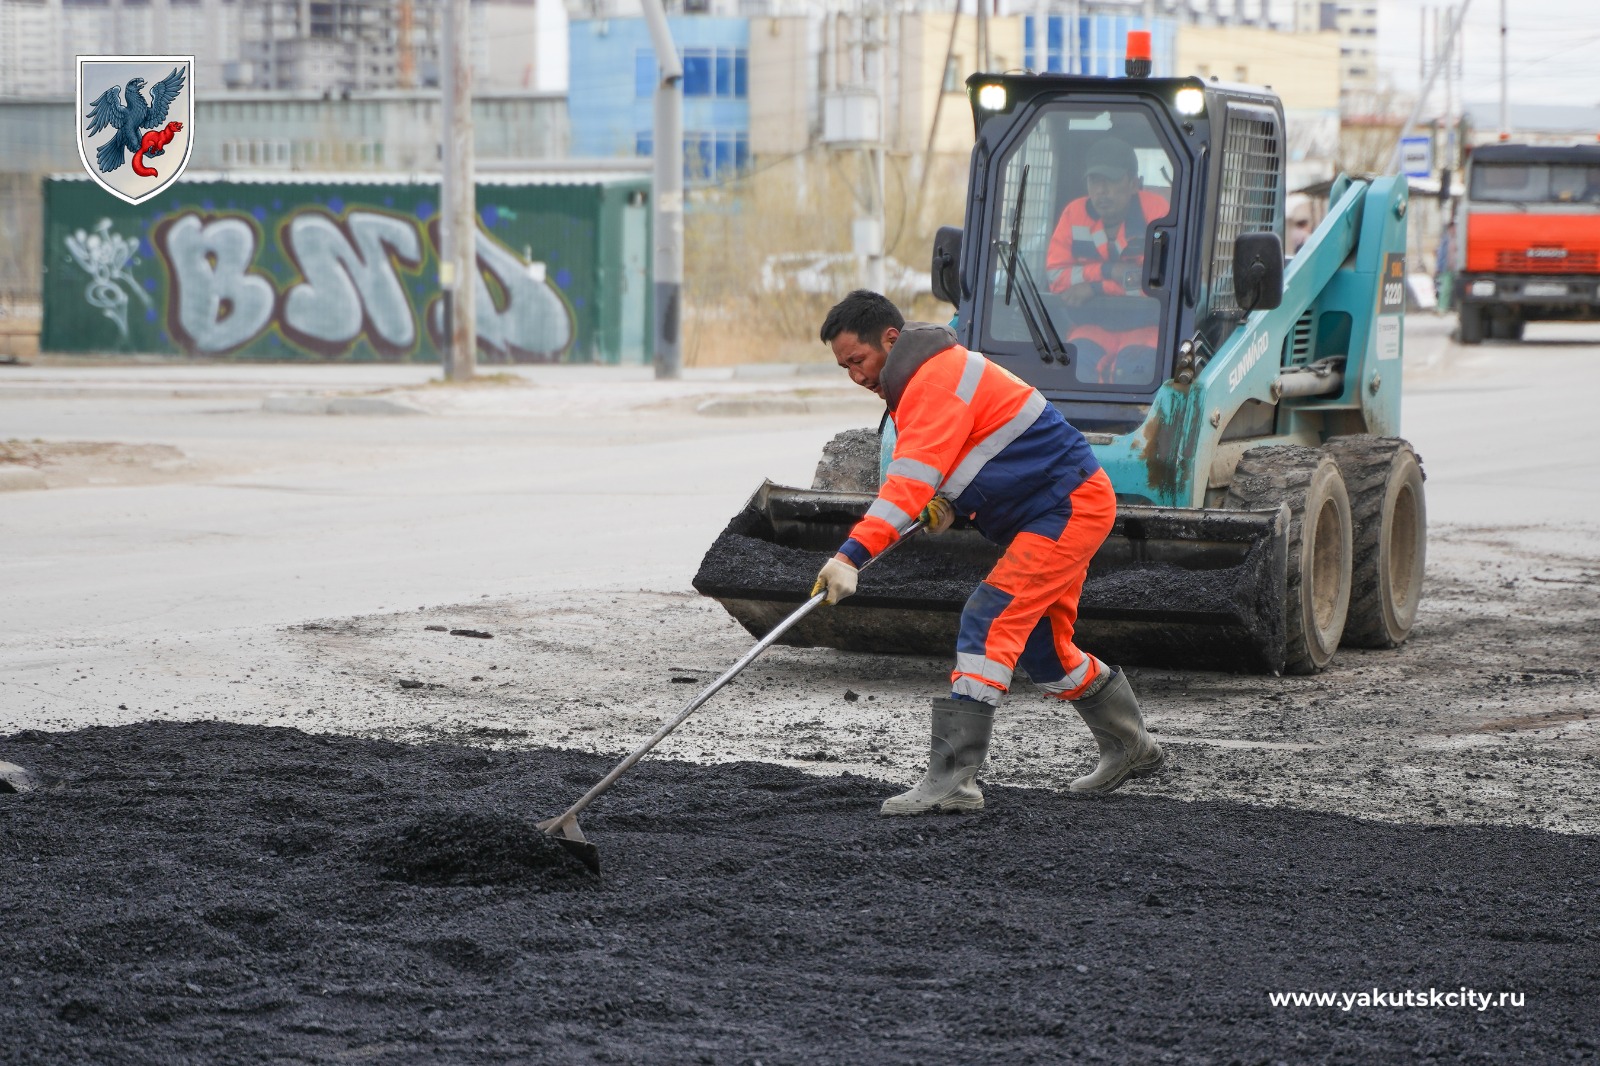 Ямочный ремонт дорог проводят в усиленном режиме в Якутске